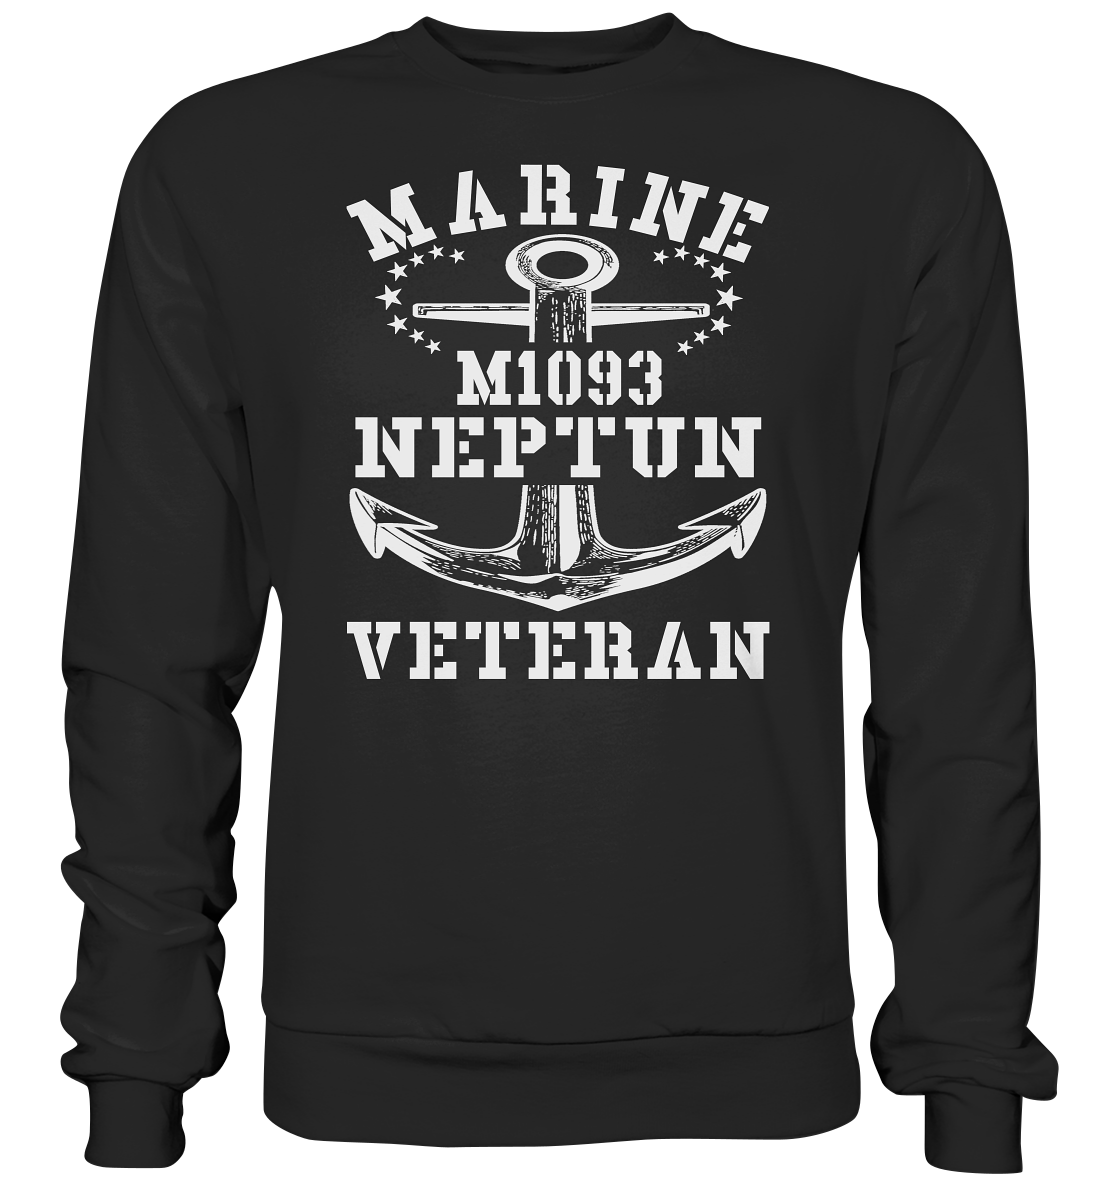 SM-Boot M1093 NEPTUN Marine Veteran  - Premium Sweatshirt